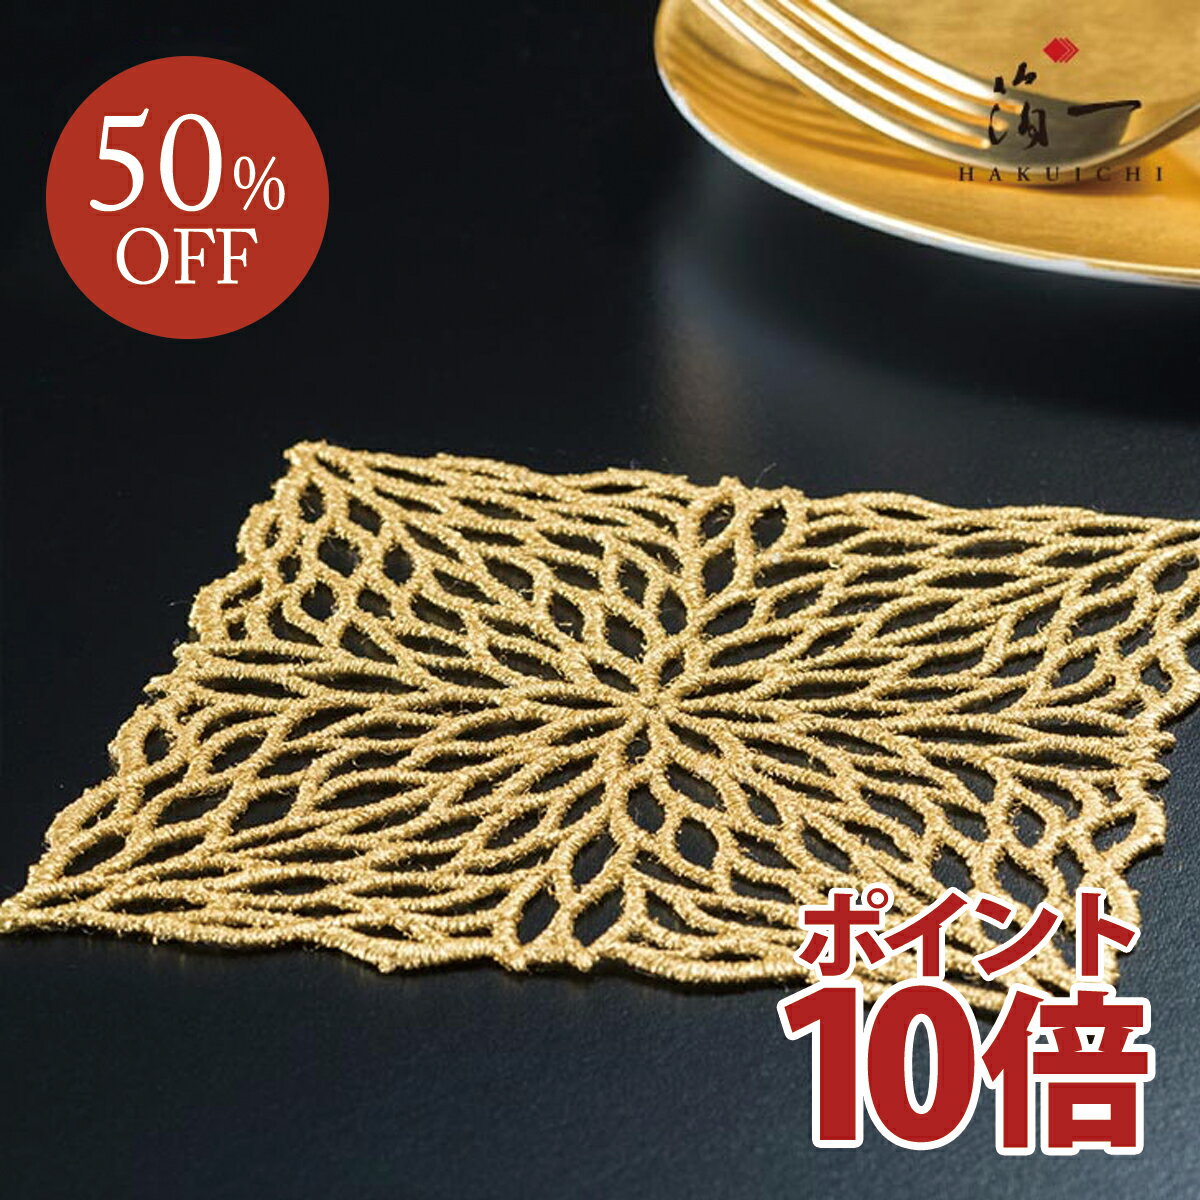 商品名 煌美　Kirabi　コースター 素材 ポリエステル、本金箔 サイズ 100×100mm(5枚入り) 商品説明 レース状のコースターです。テーブルを華やかに彩ります。素地となるのは刺繍のレースの一種であるケミカルレースです。日本製のオ...